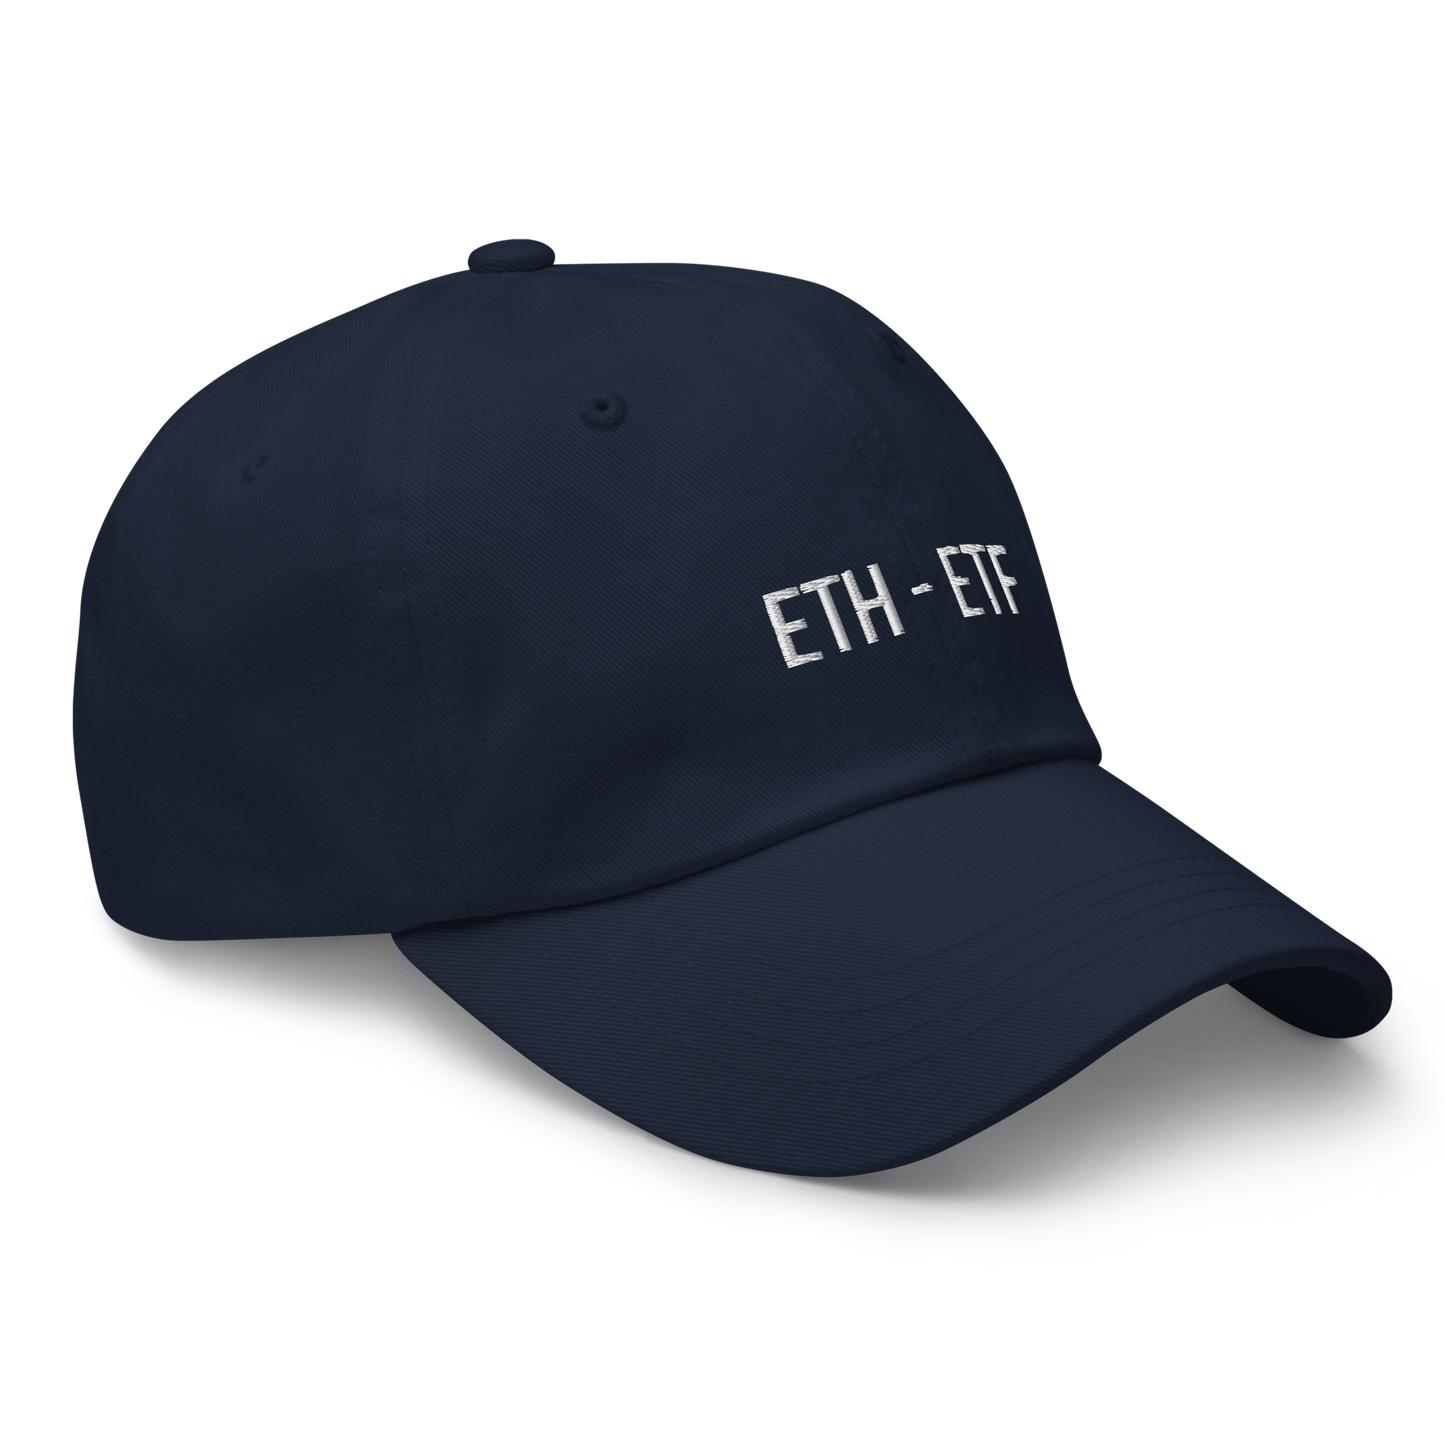 ETH ETF - Cap